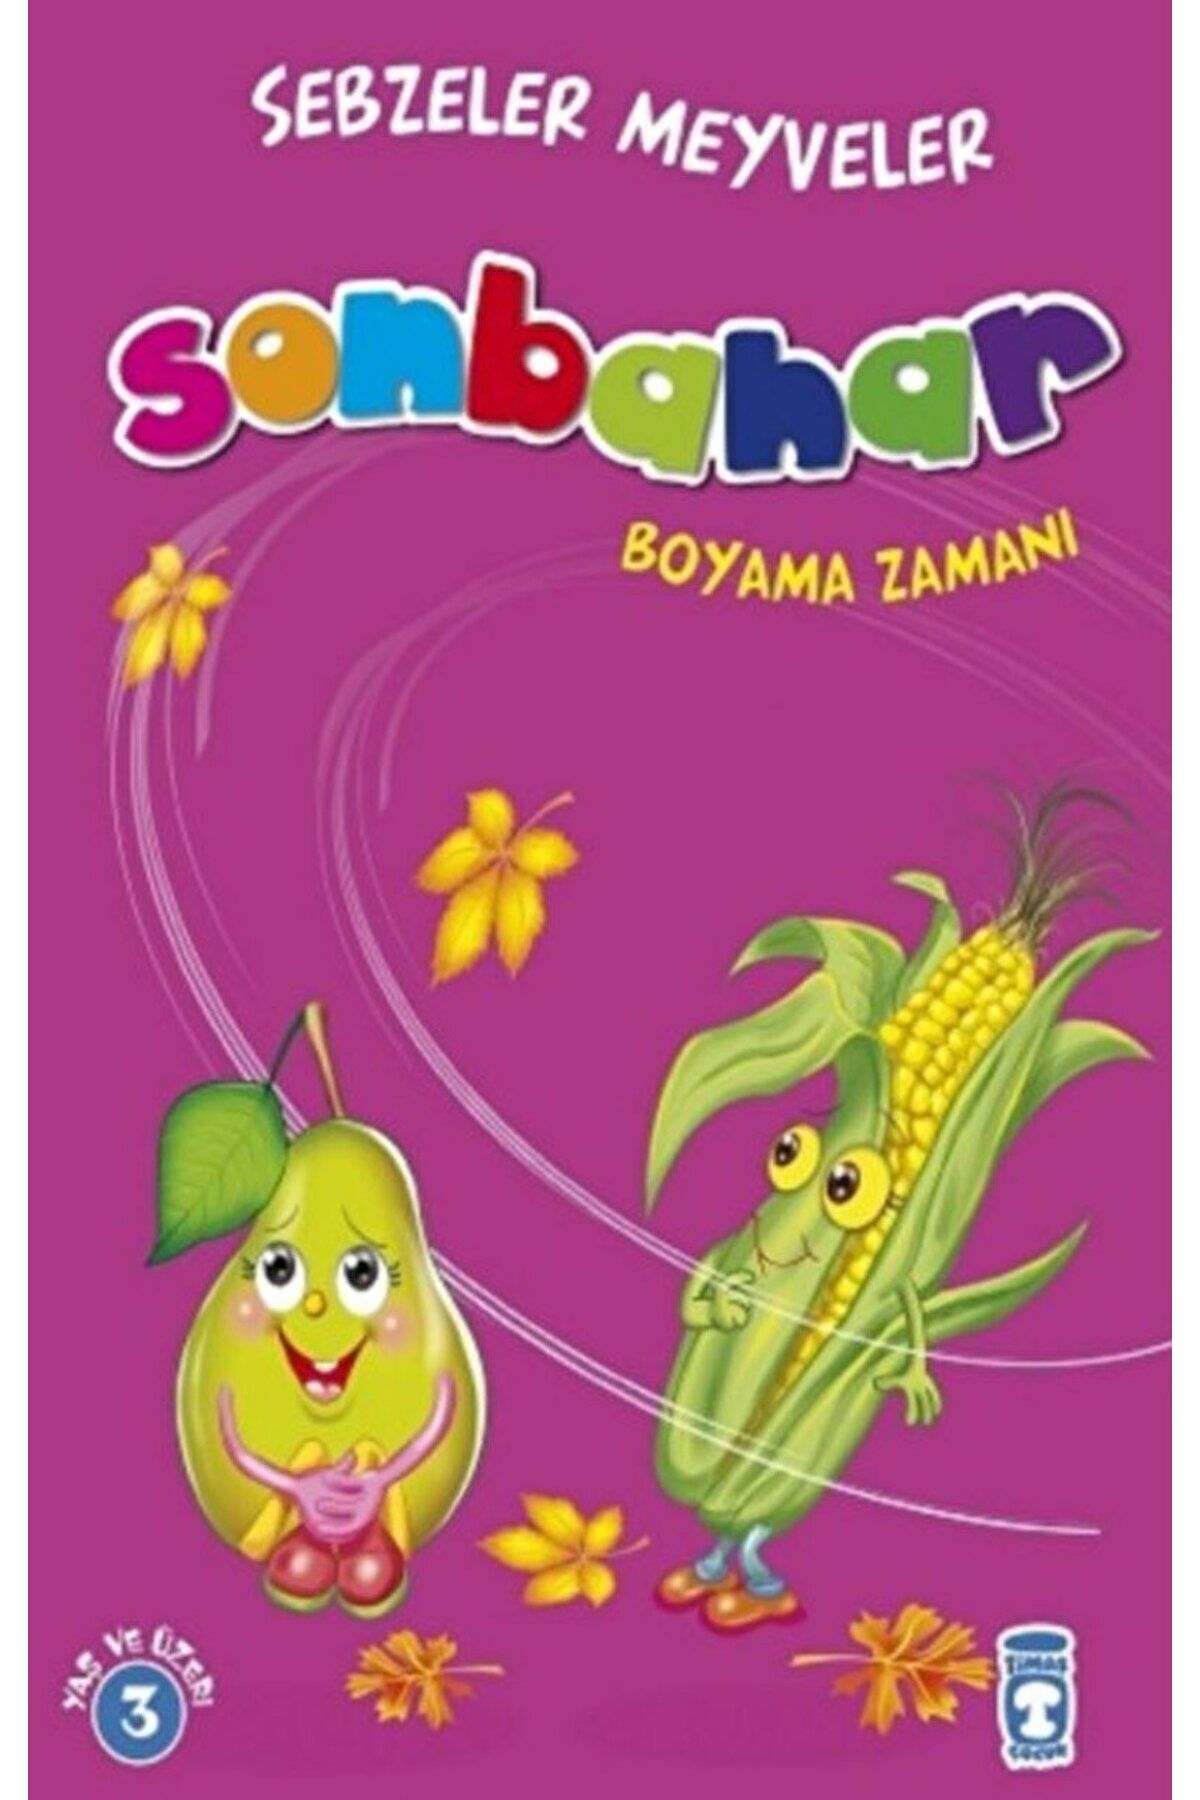 Timaş Çocuk Sonbahar Boyama Zamanı - Sebzeler Meyveler / Gökhan Gülkan / Timaş Çocuk / 9786050820706